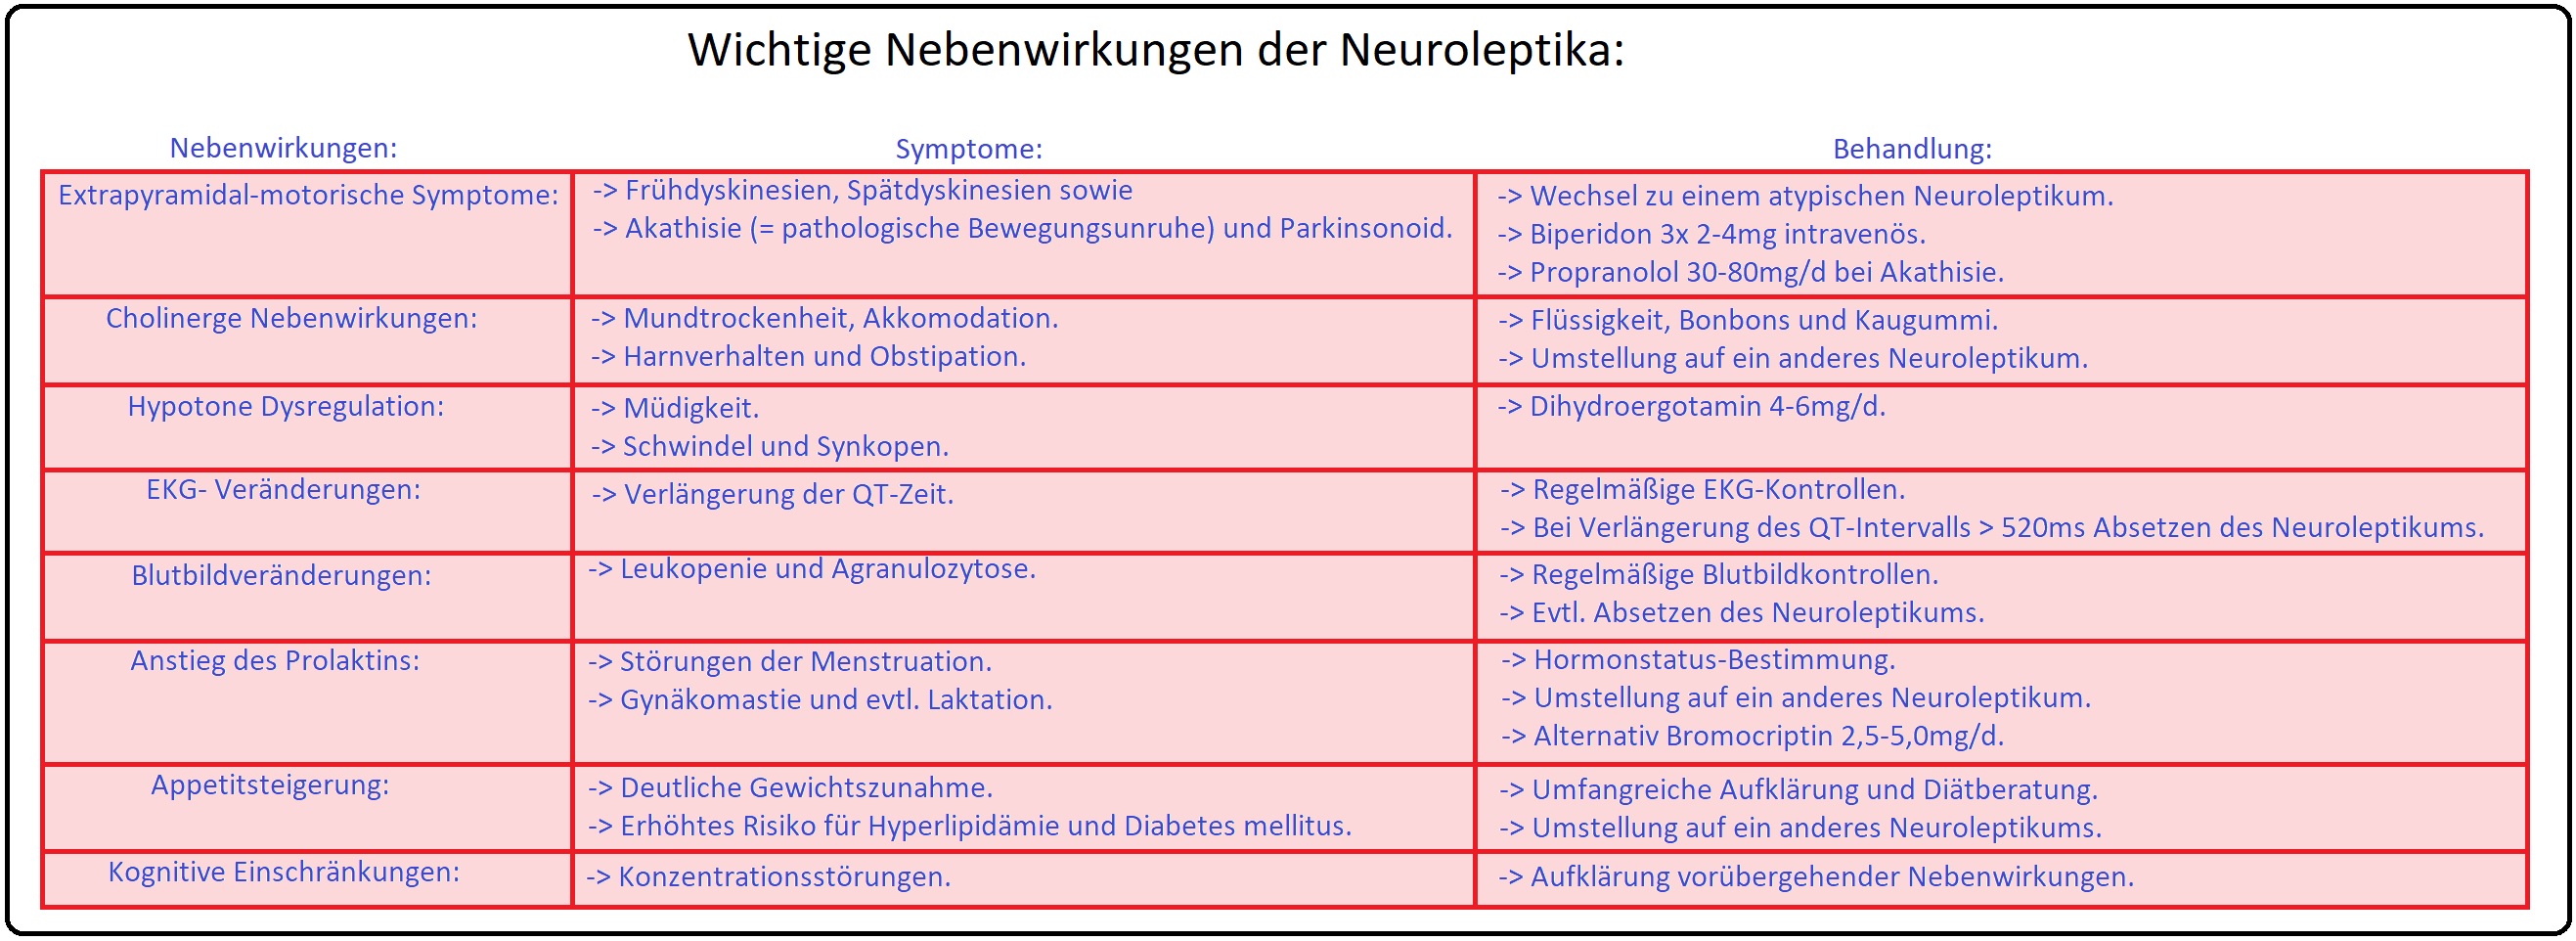 700 Wichtige Nebenwirkungen der Neuroleptika